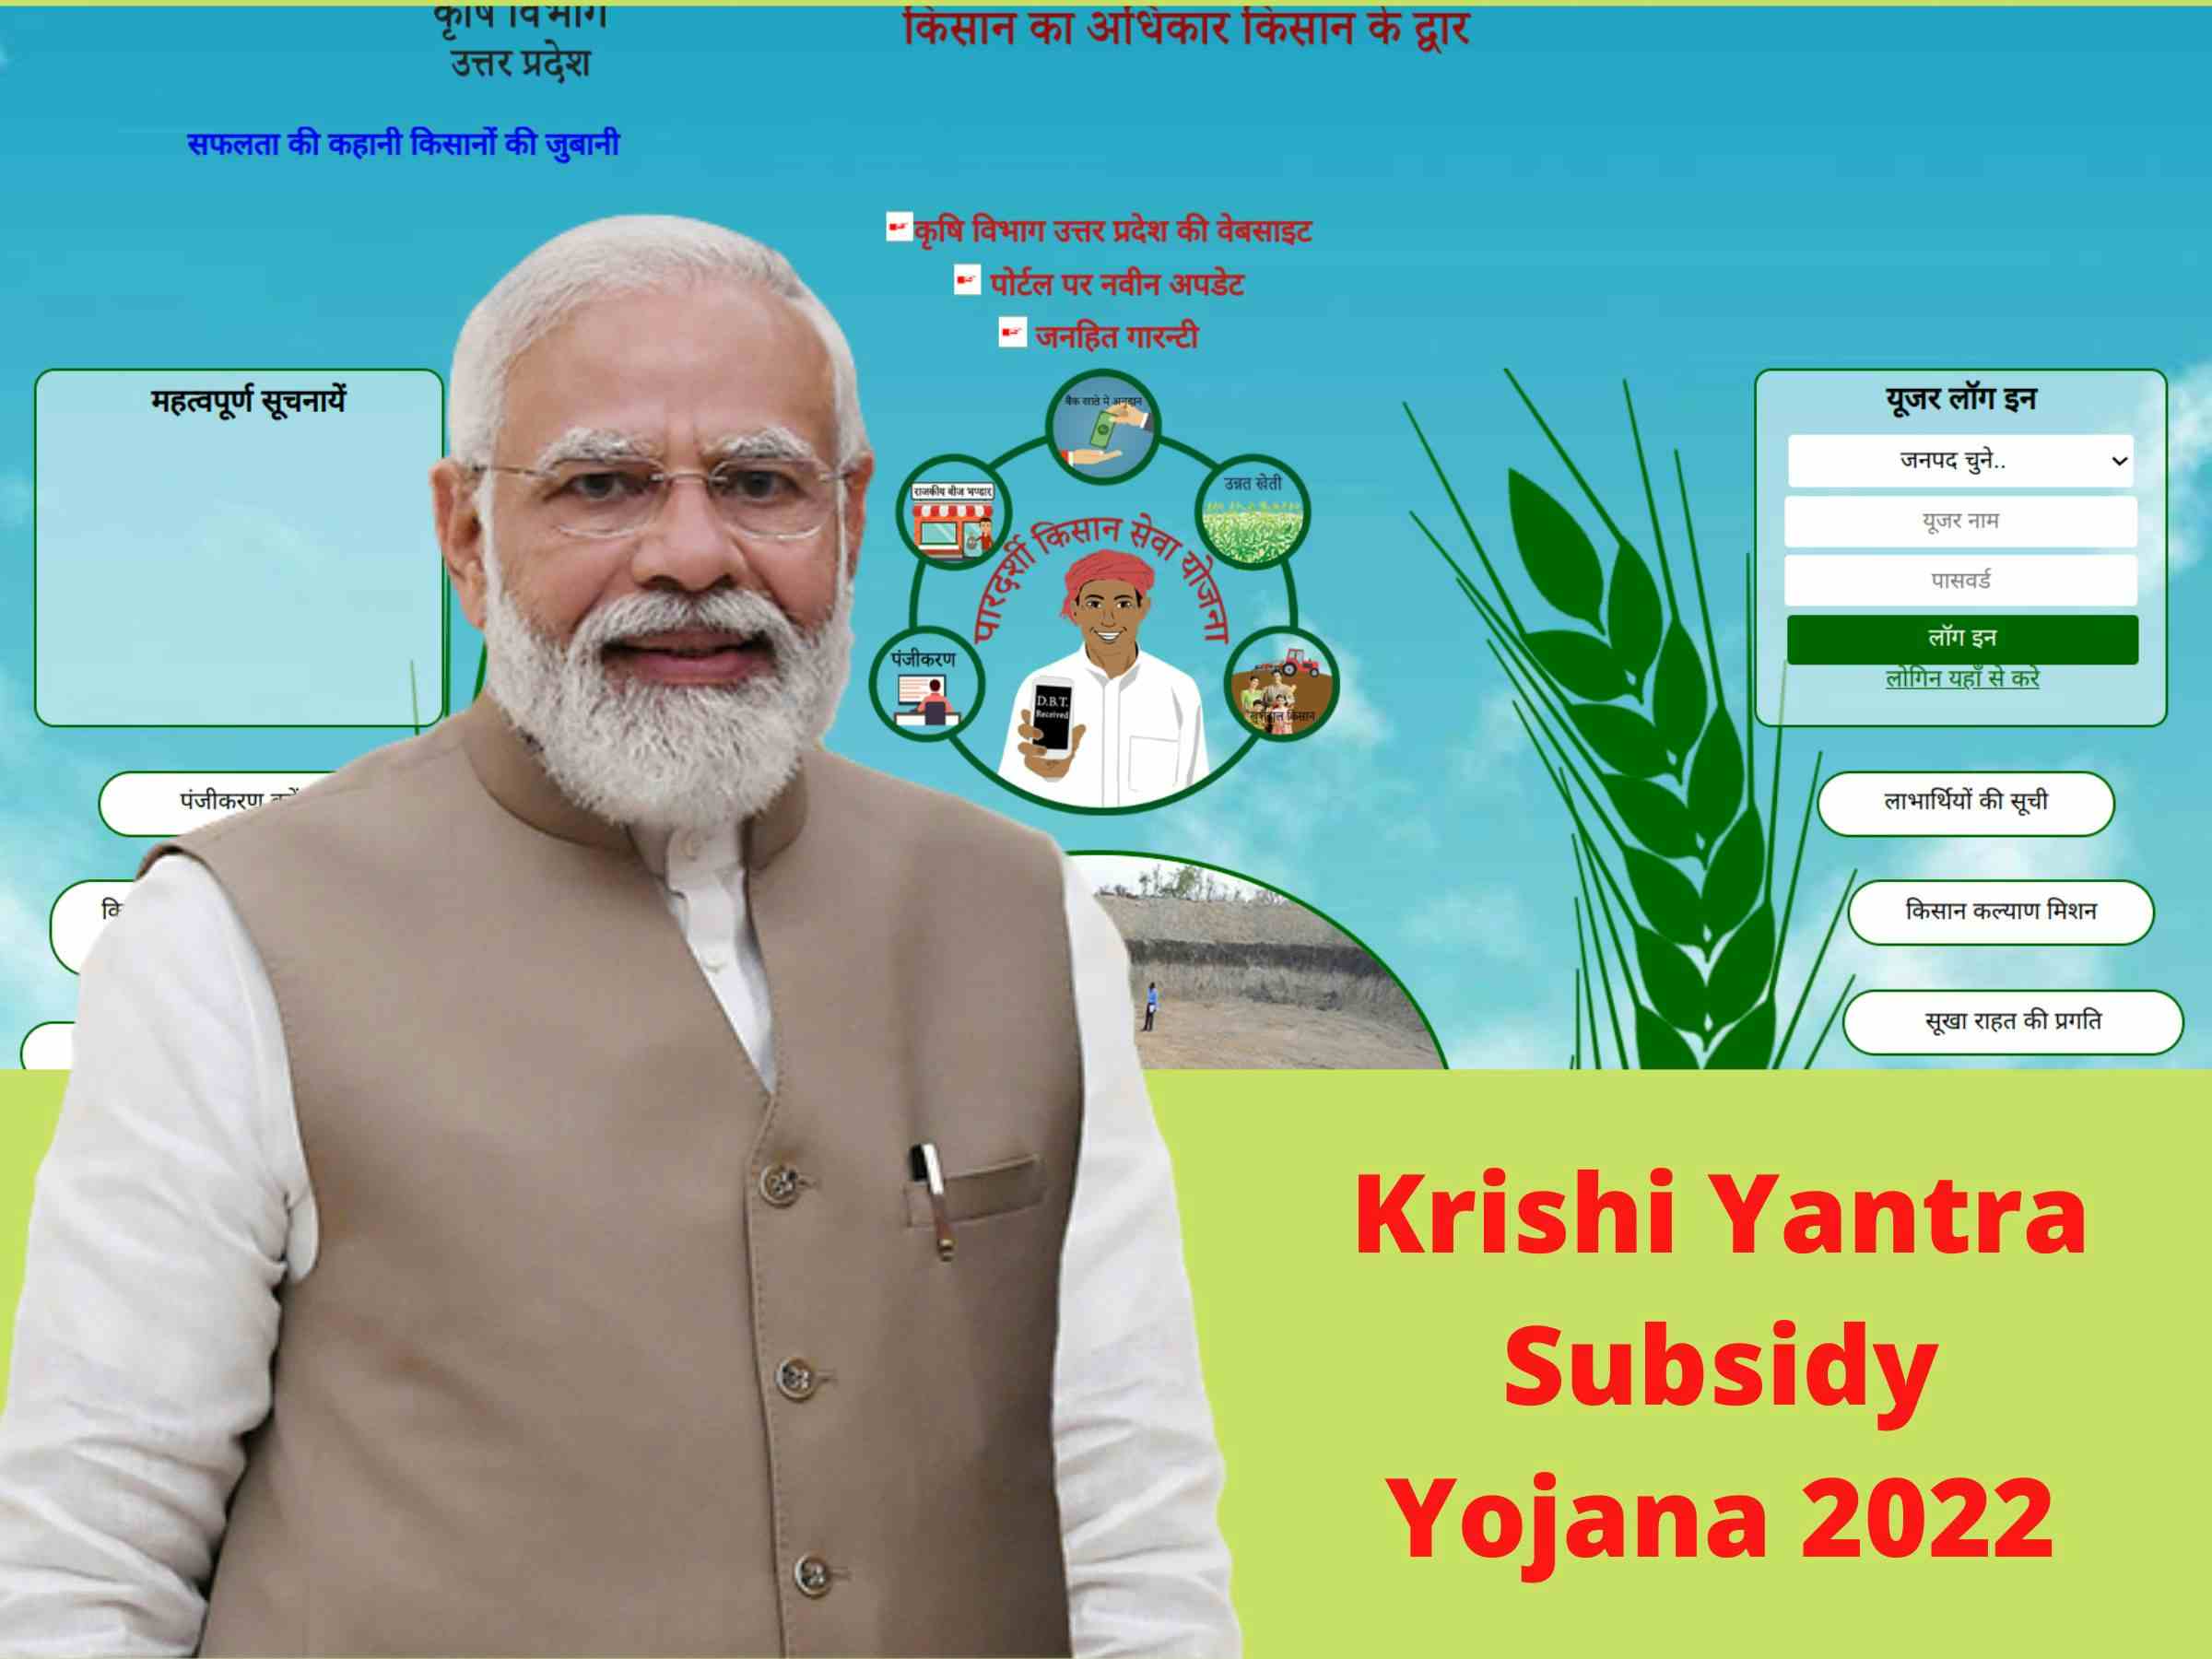 Krishi Yantra Subsidy Yojana 2022 - Krishi Yantra Subsidy Yojana Rajasthan - Krishi Yantra Subsidy Yojana UP